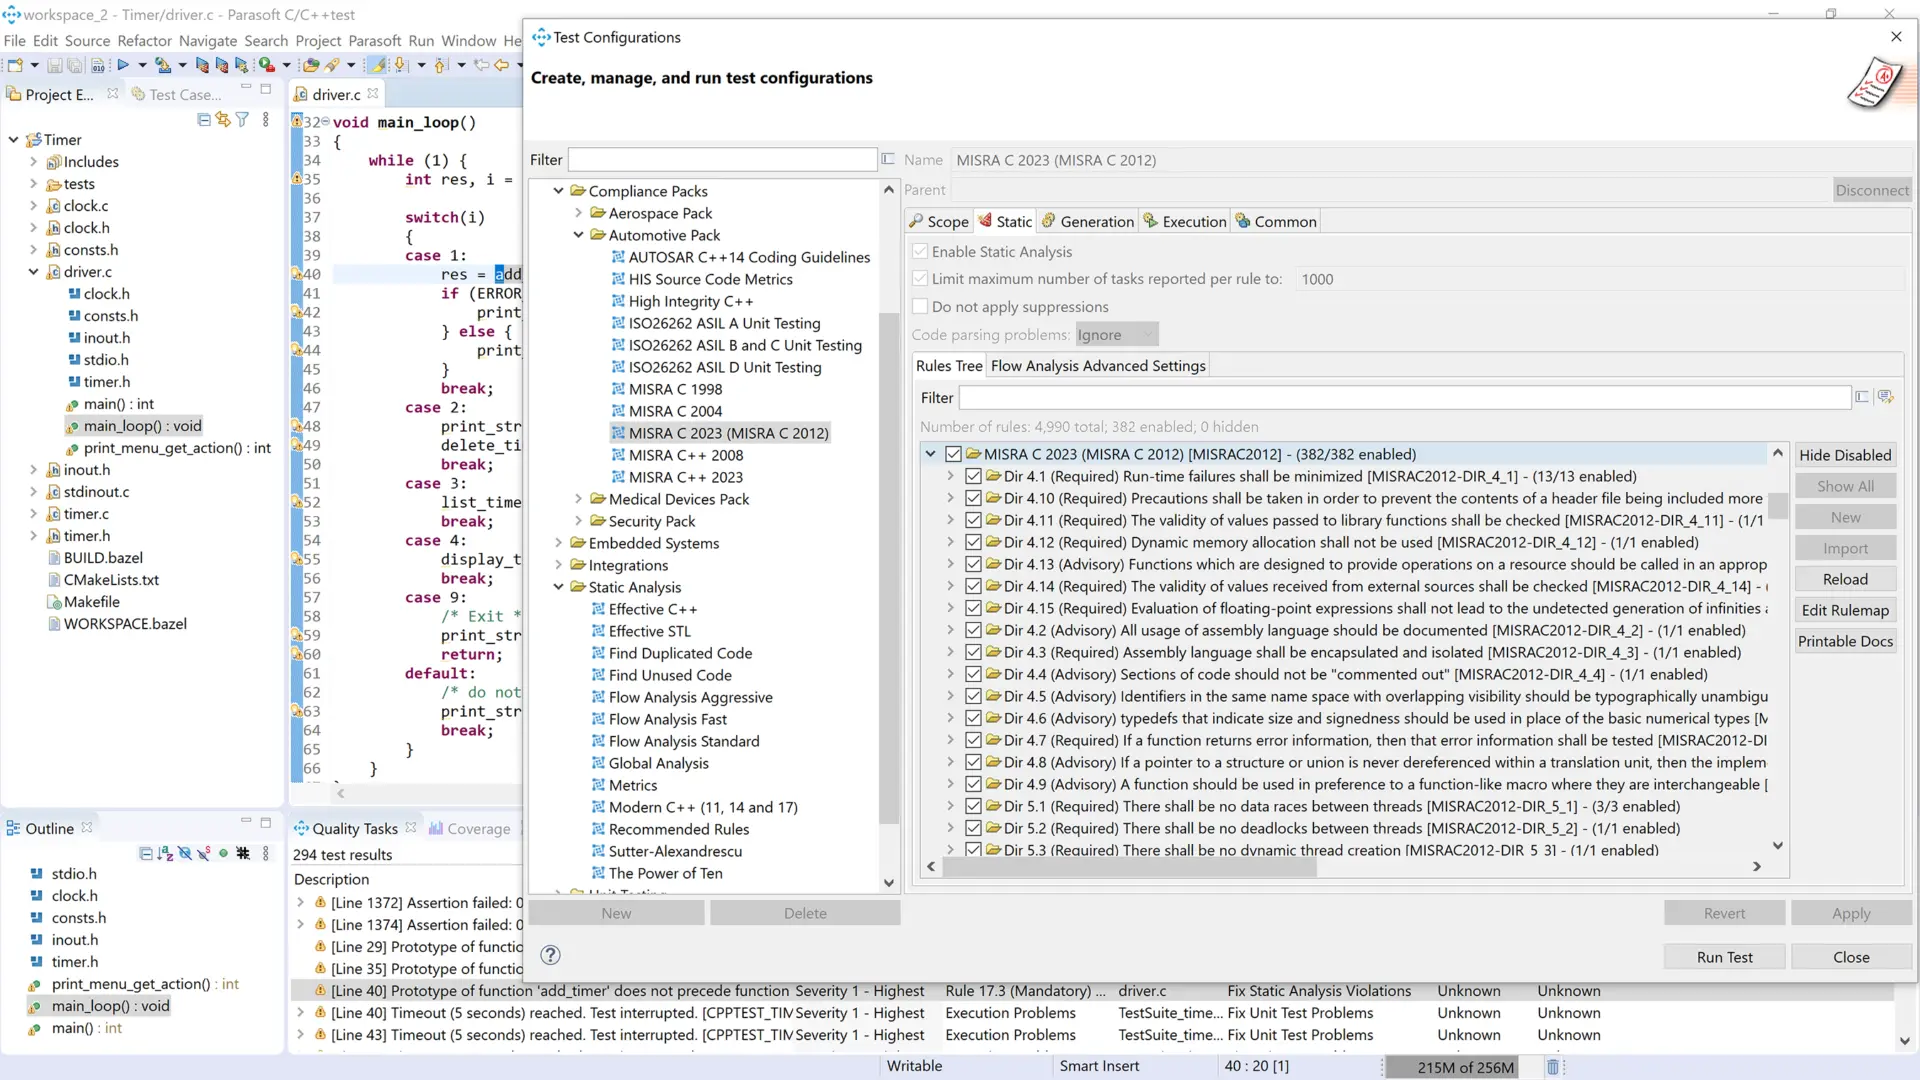 Captura de pantalla de las configuraciones de prueba de Parasoft C/C++ donde aplica técnicas de análisis de código fuente para verificar la calidad del código con los estándares de la industria.